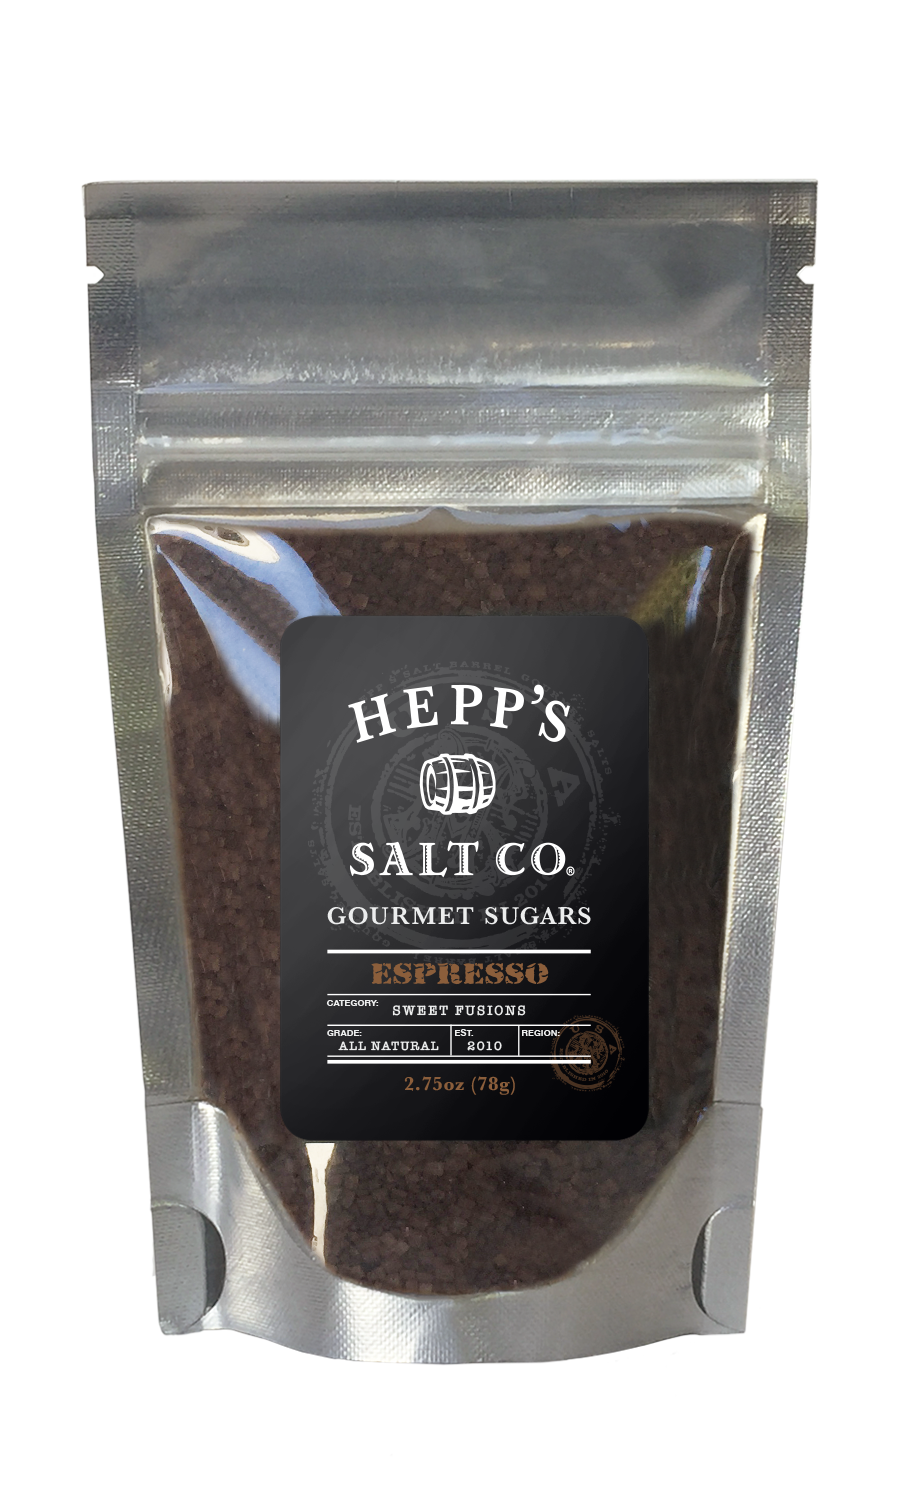 Espresso Cane Sugar - HEPPS SALT CO. 